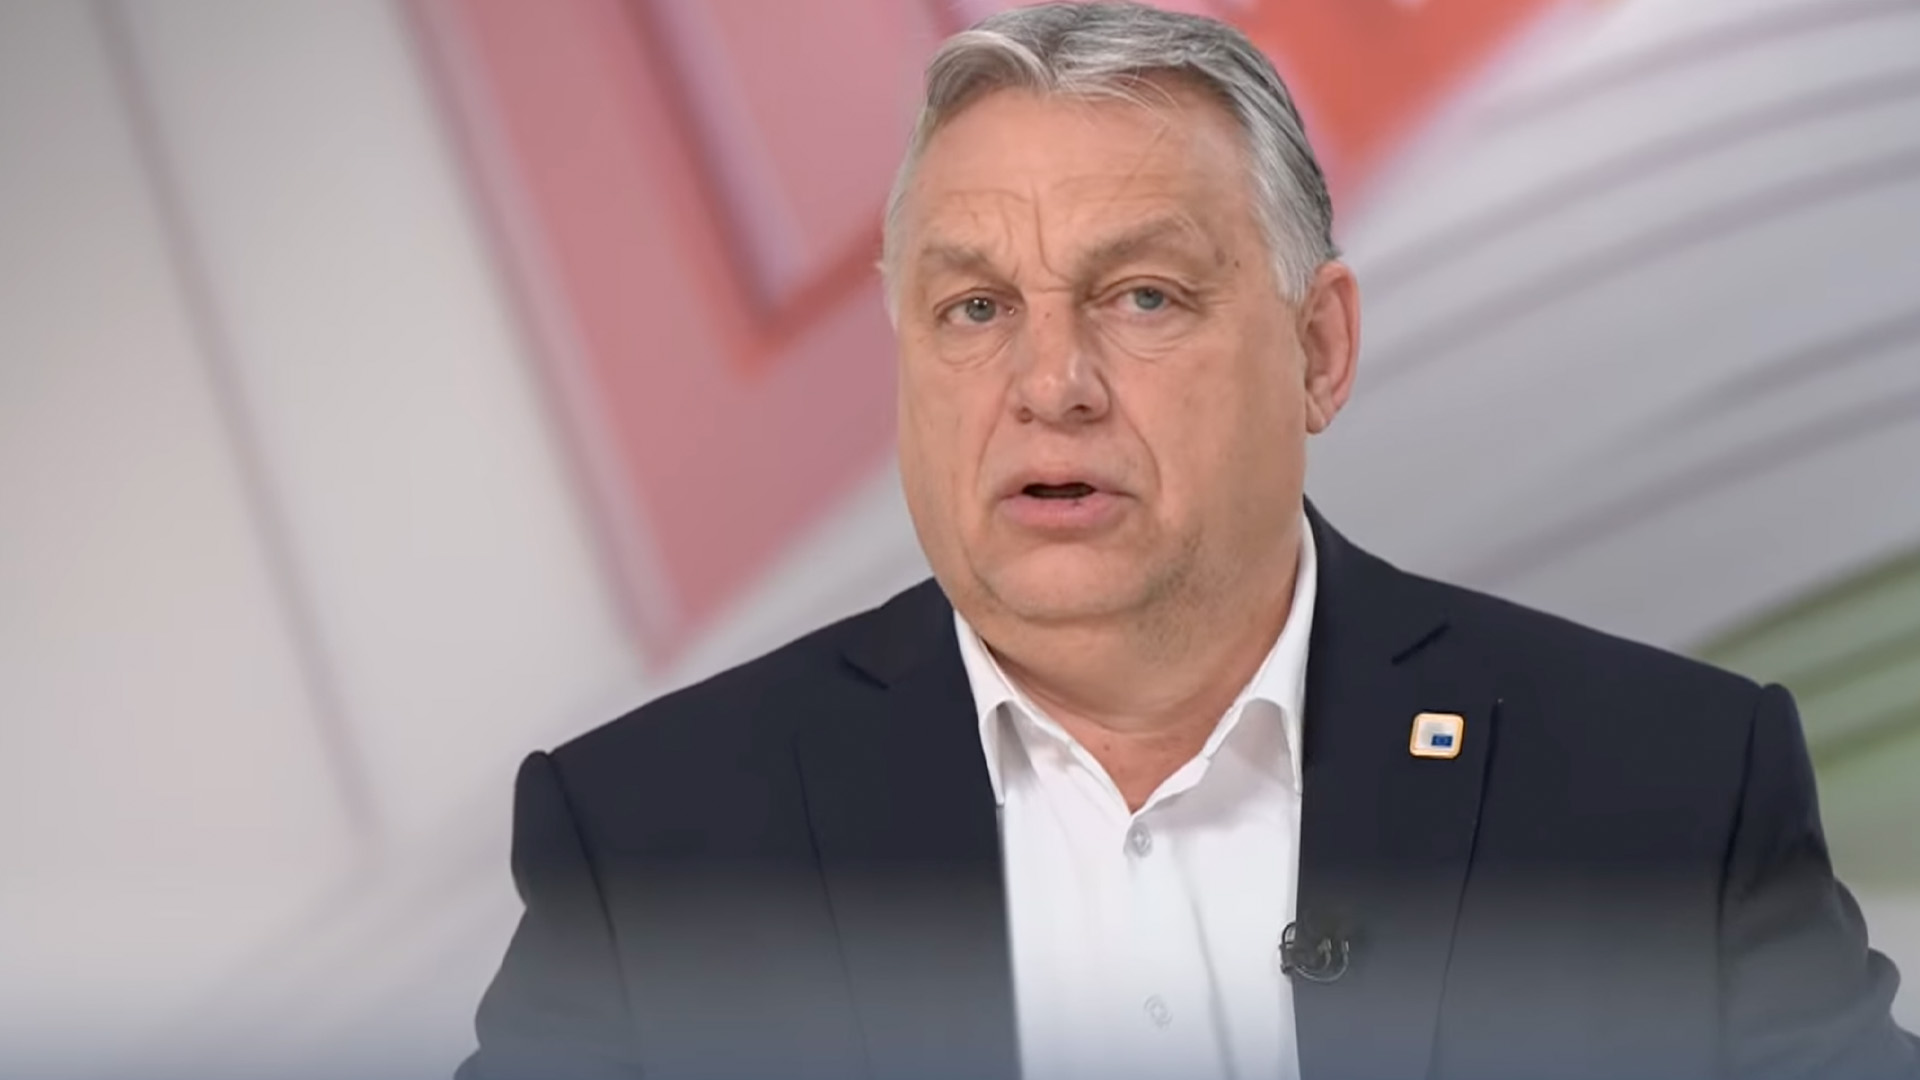 Szomszédokat, Dallast, Való Világot idéző közjátékok zajlanak Magyarországon Orbán szerint